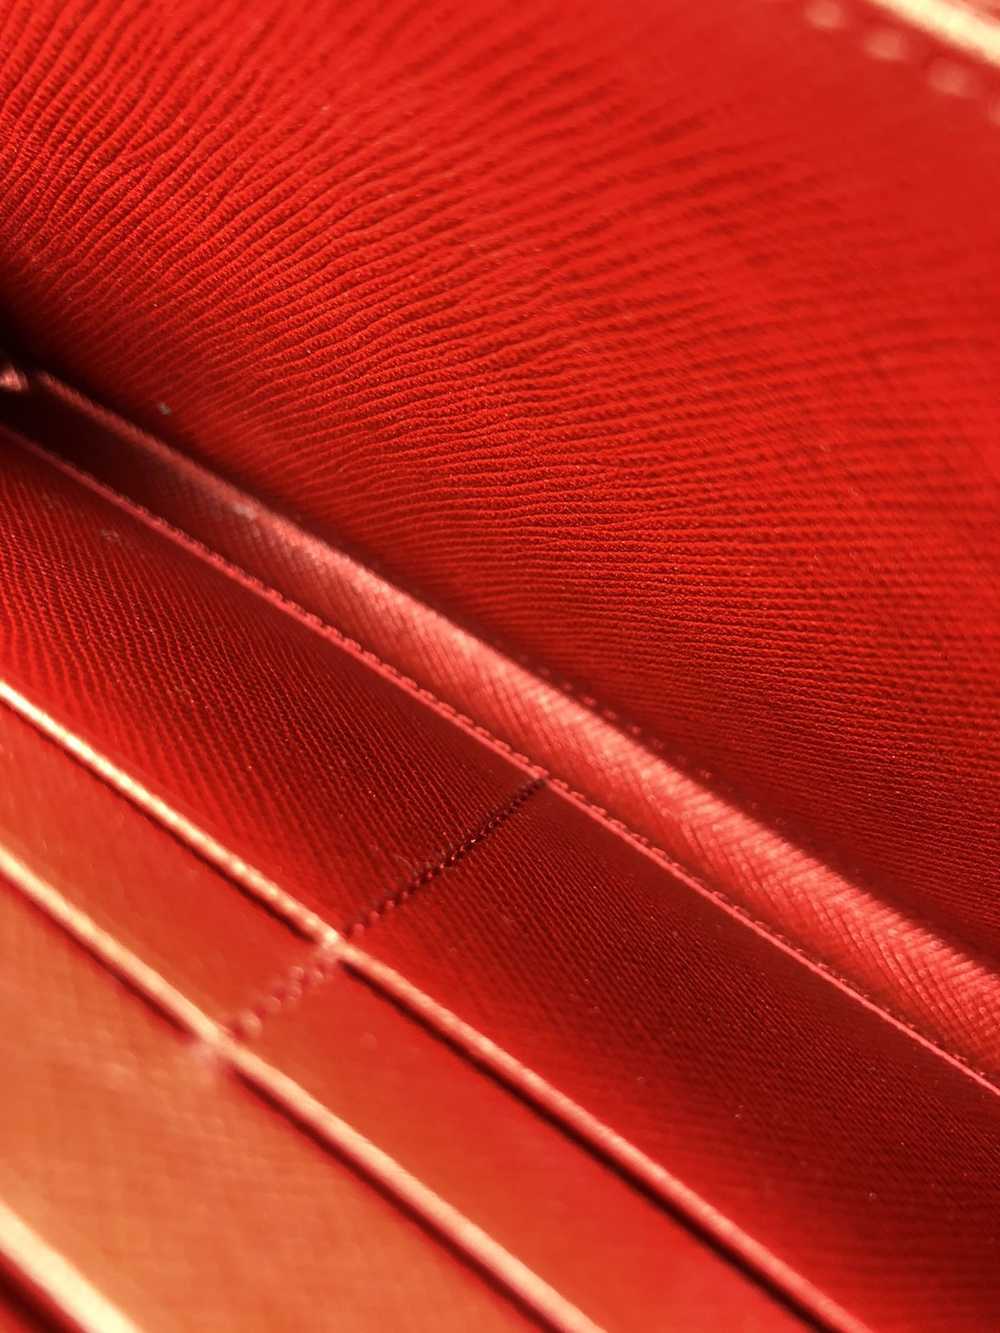 Prada Prada tessuto red nylon zippy wallet - image 6